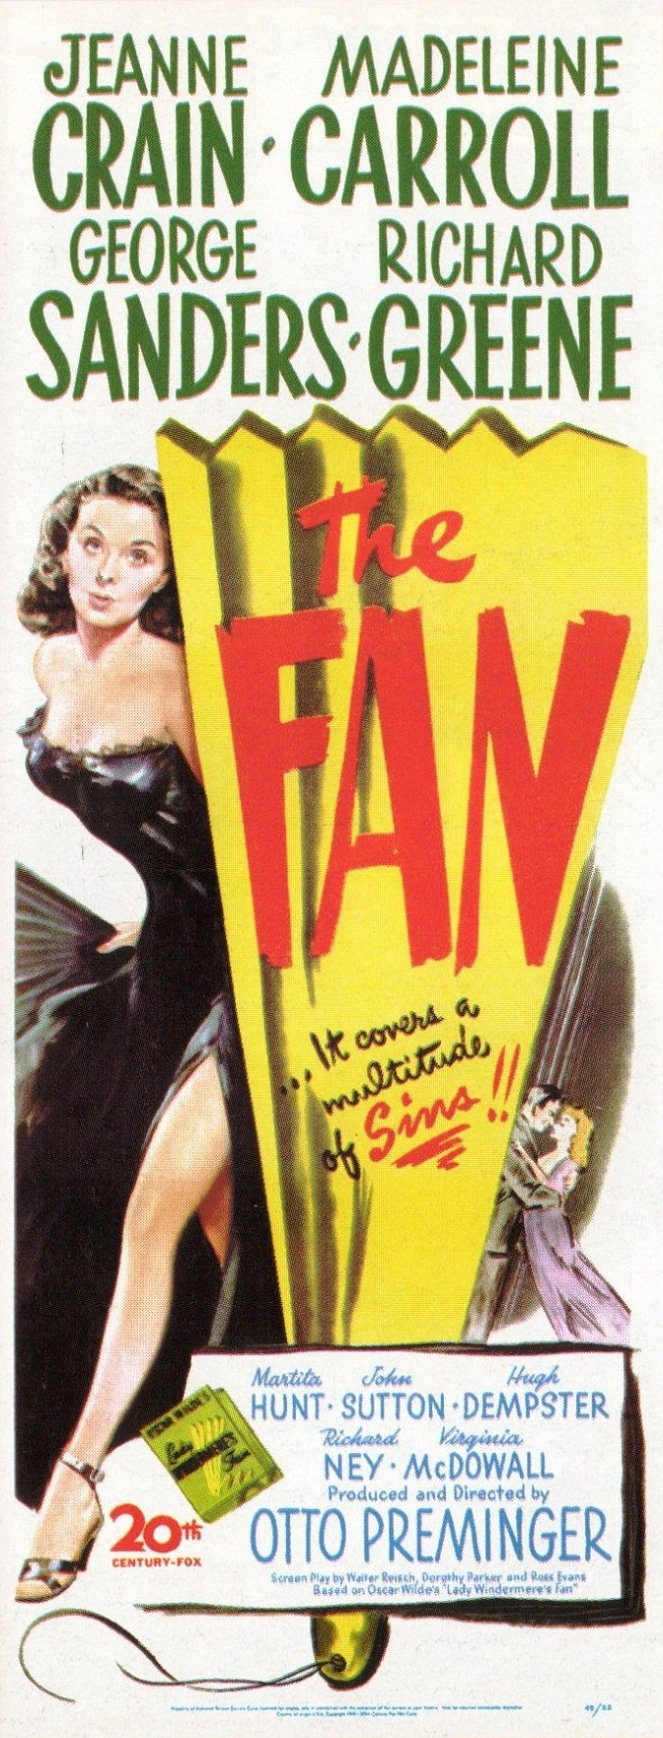 The Fan - Plakate